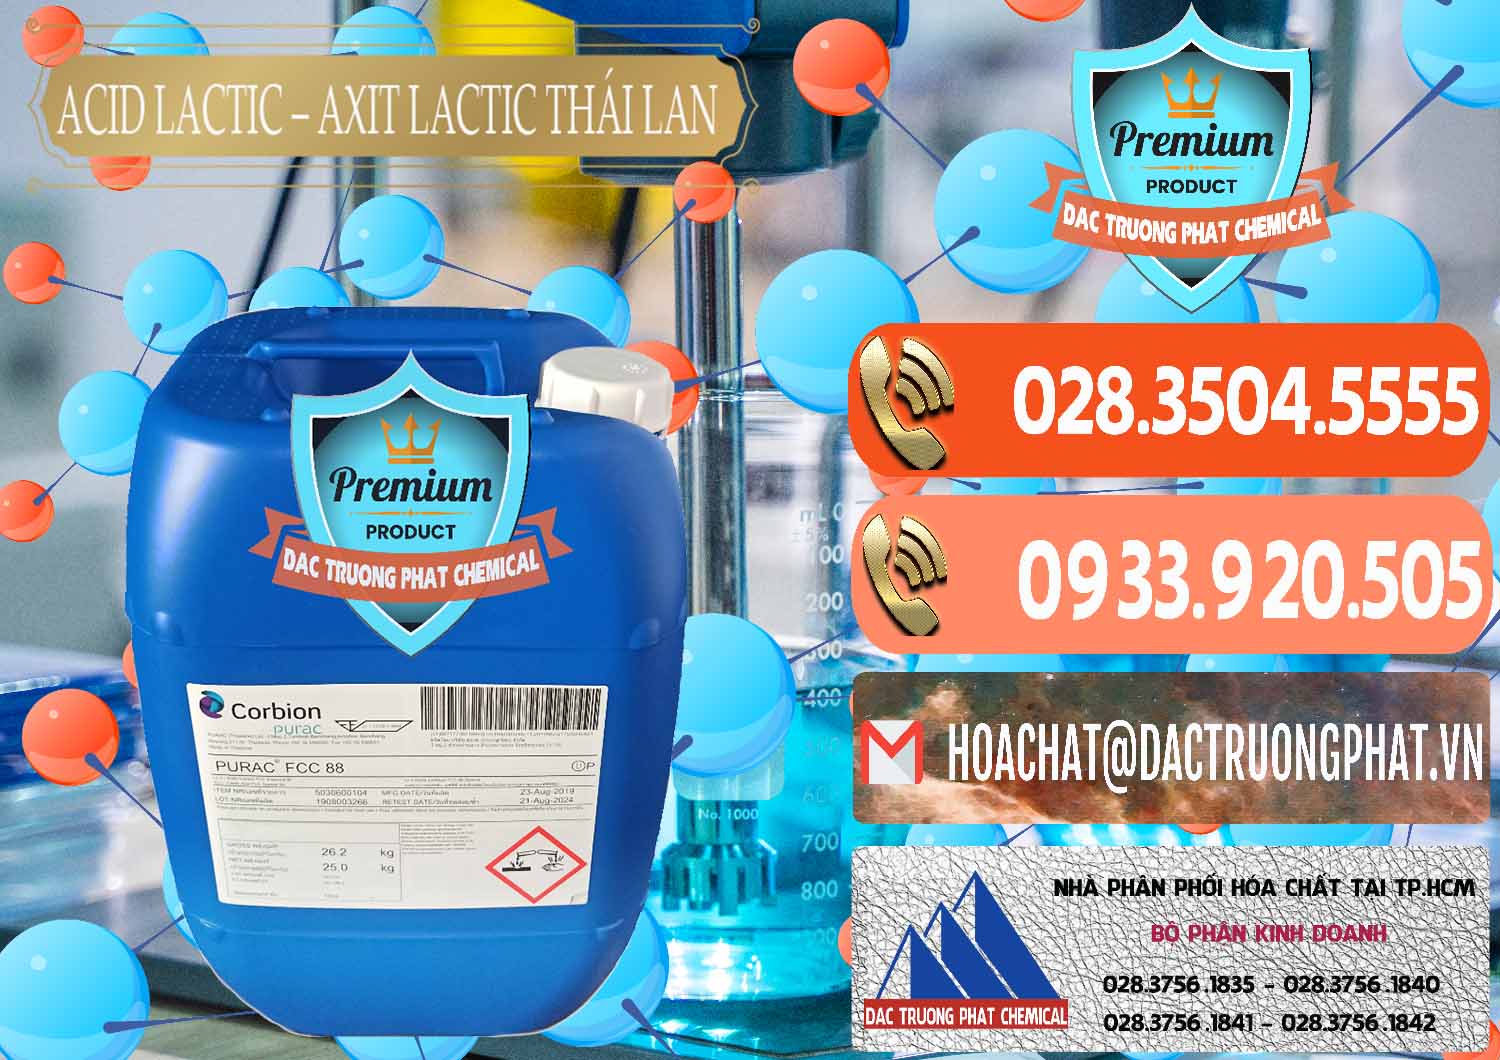 Cty chuyên cung ứng & bán Acid Lactic – Axit Lactic Thái Lan Purac FCC 88 - 0012 - Cung cấp và bán hóa chất tại TP.HCM - hoachatmientay.com